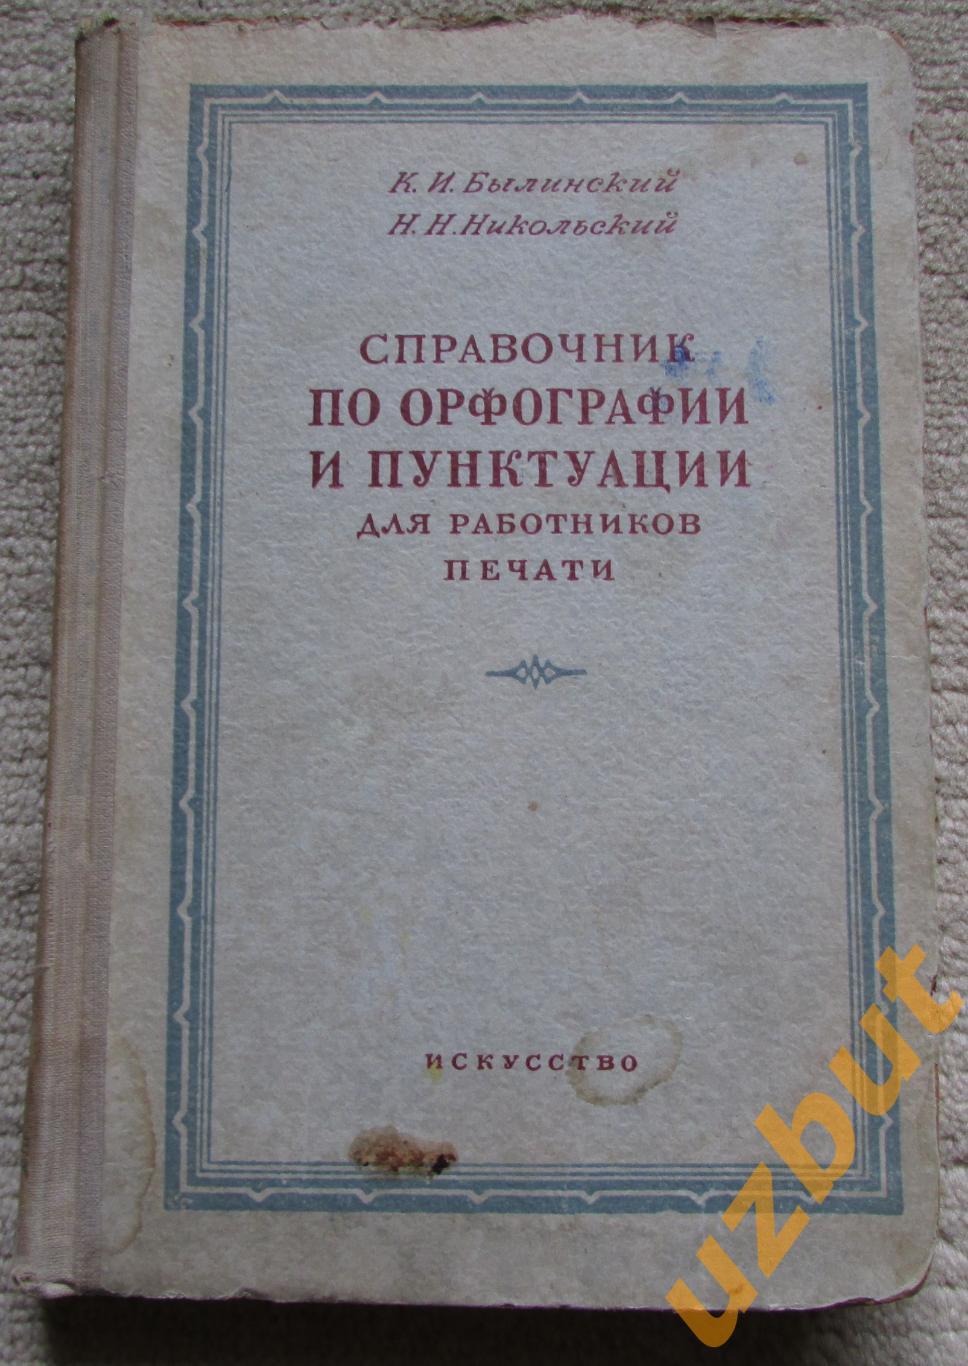 Справочник по орфографии и пунктуации для работников печати, К.И. Былинский 1952